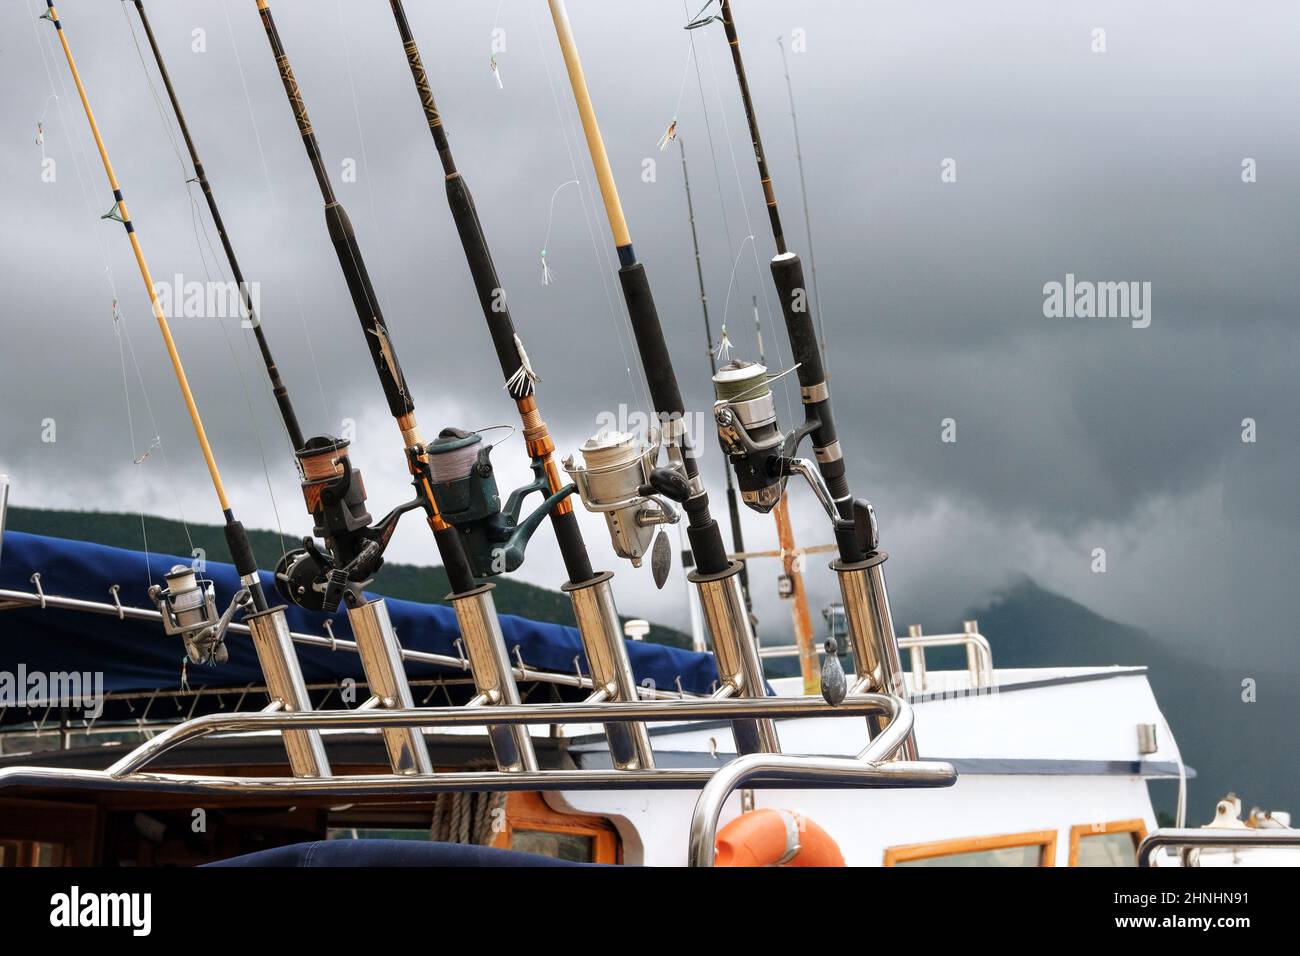 Canne da pesca commerciali su acque turchesi. Attrezzatura da pesca in mare. Attività di cattura del pesce, sia per il cibo che come sport. Foto Stock